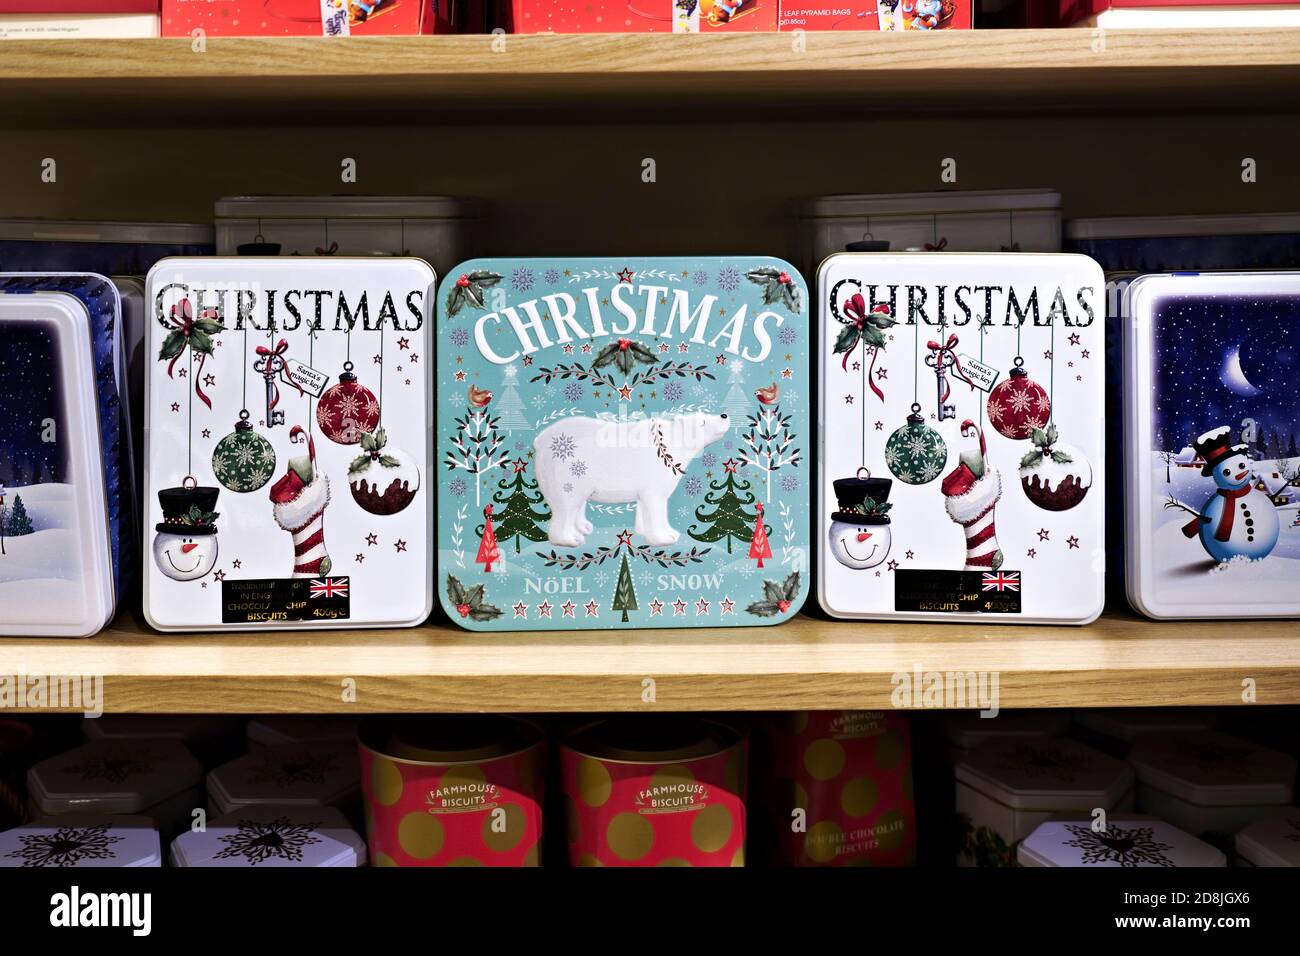 Verpackung von traditionellen englischen Weihnachts-Schokolade Chip Cookie Metall-Boxen, auf einem Regal in einem Geschäft zu zeigen. Stockfoto